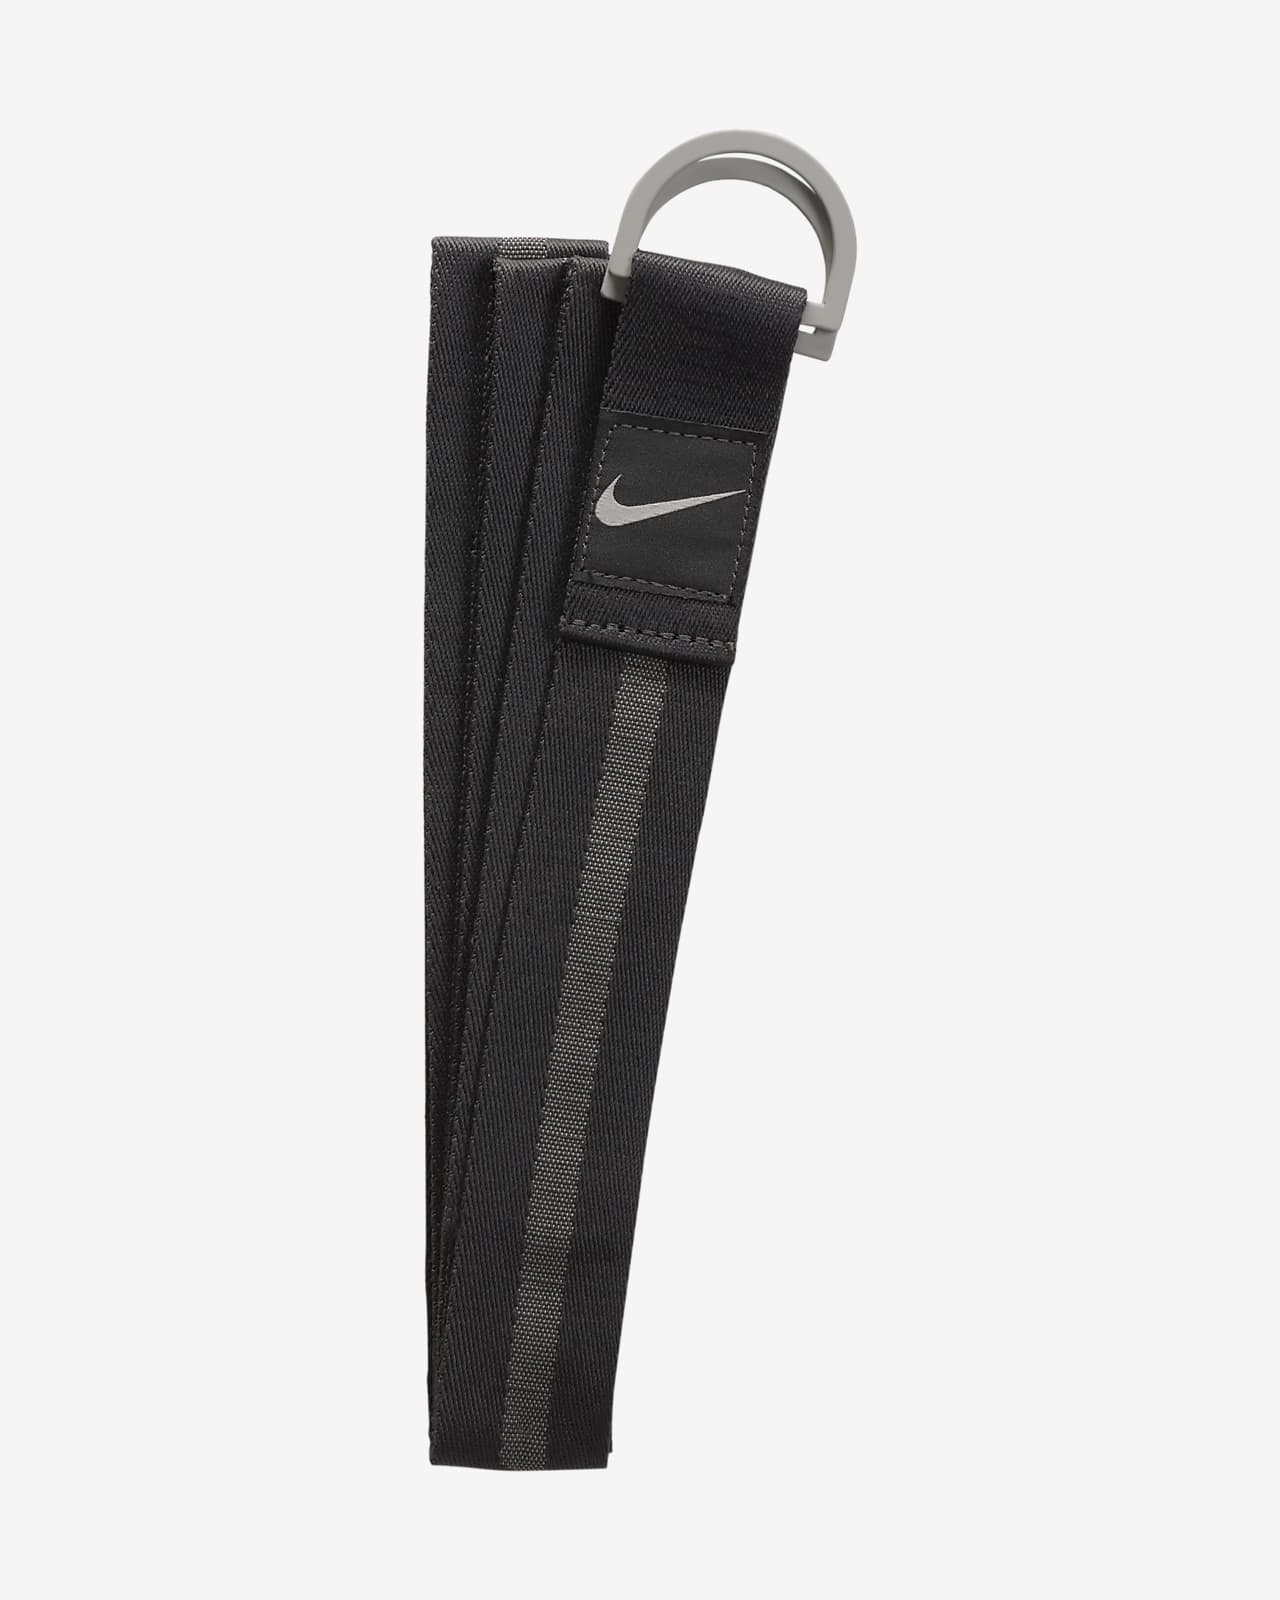 Nastro 2 in 1 Nike Yoga (213 cm circa)